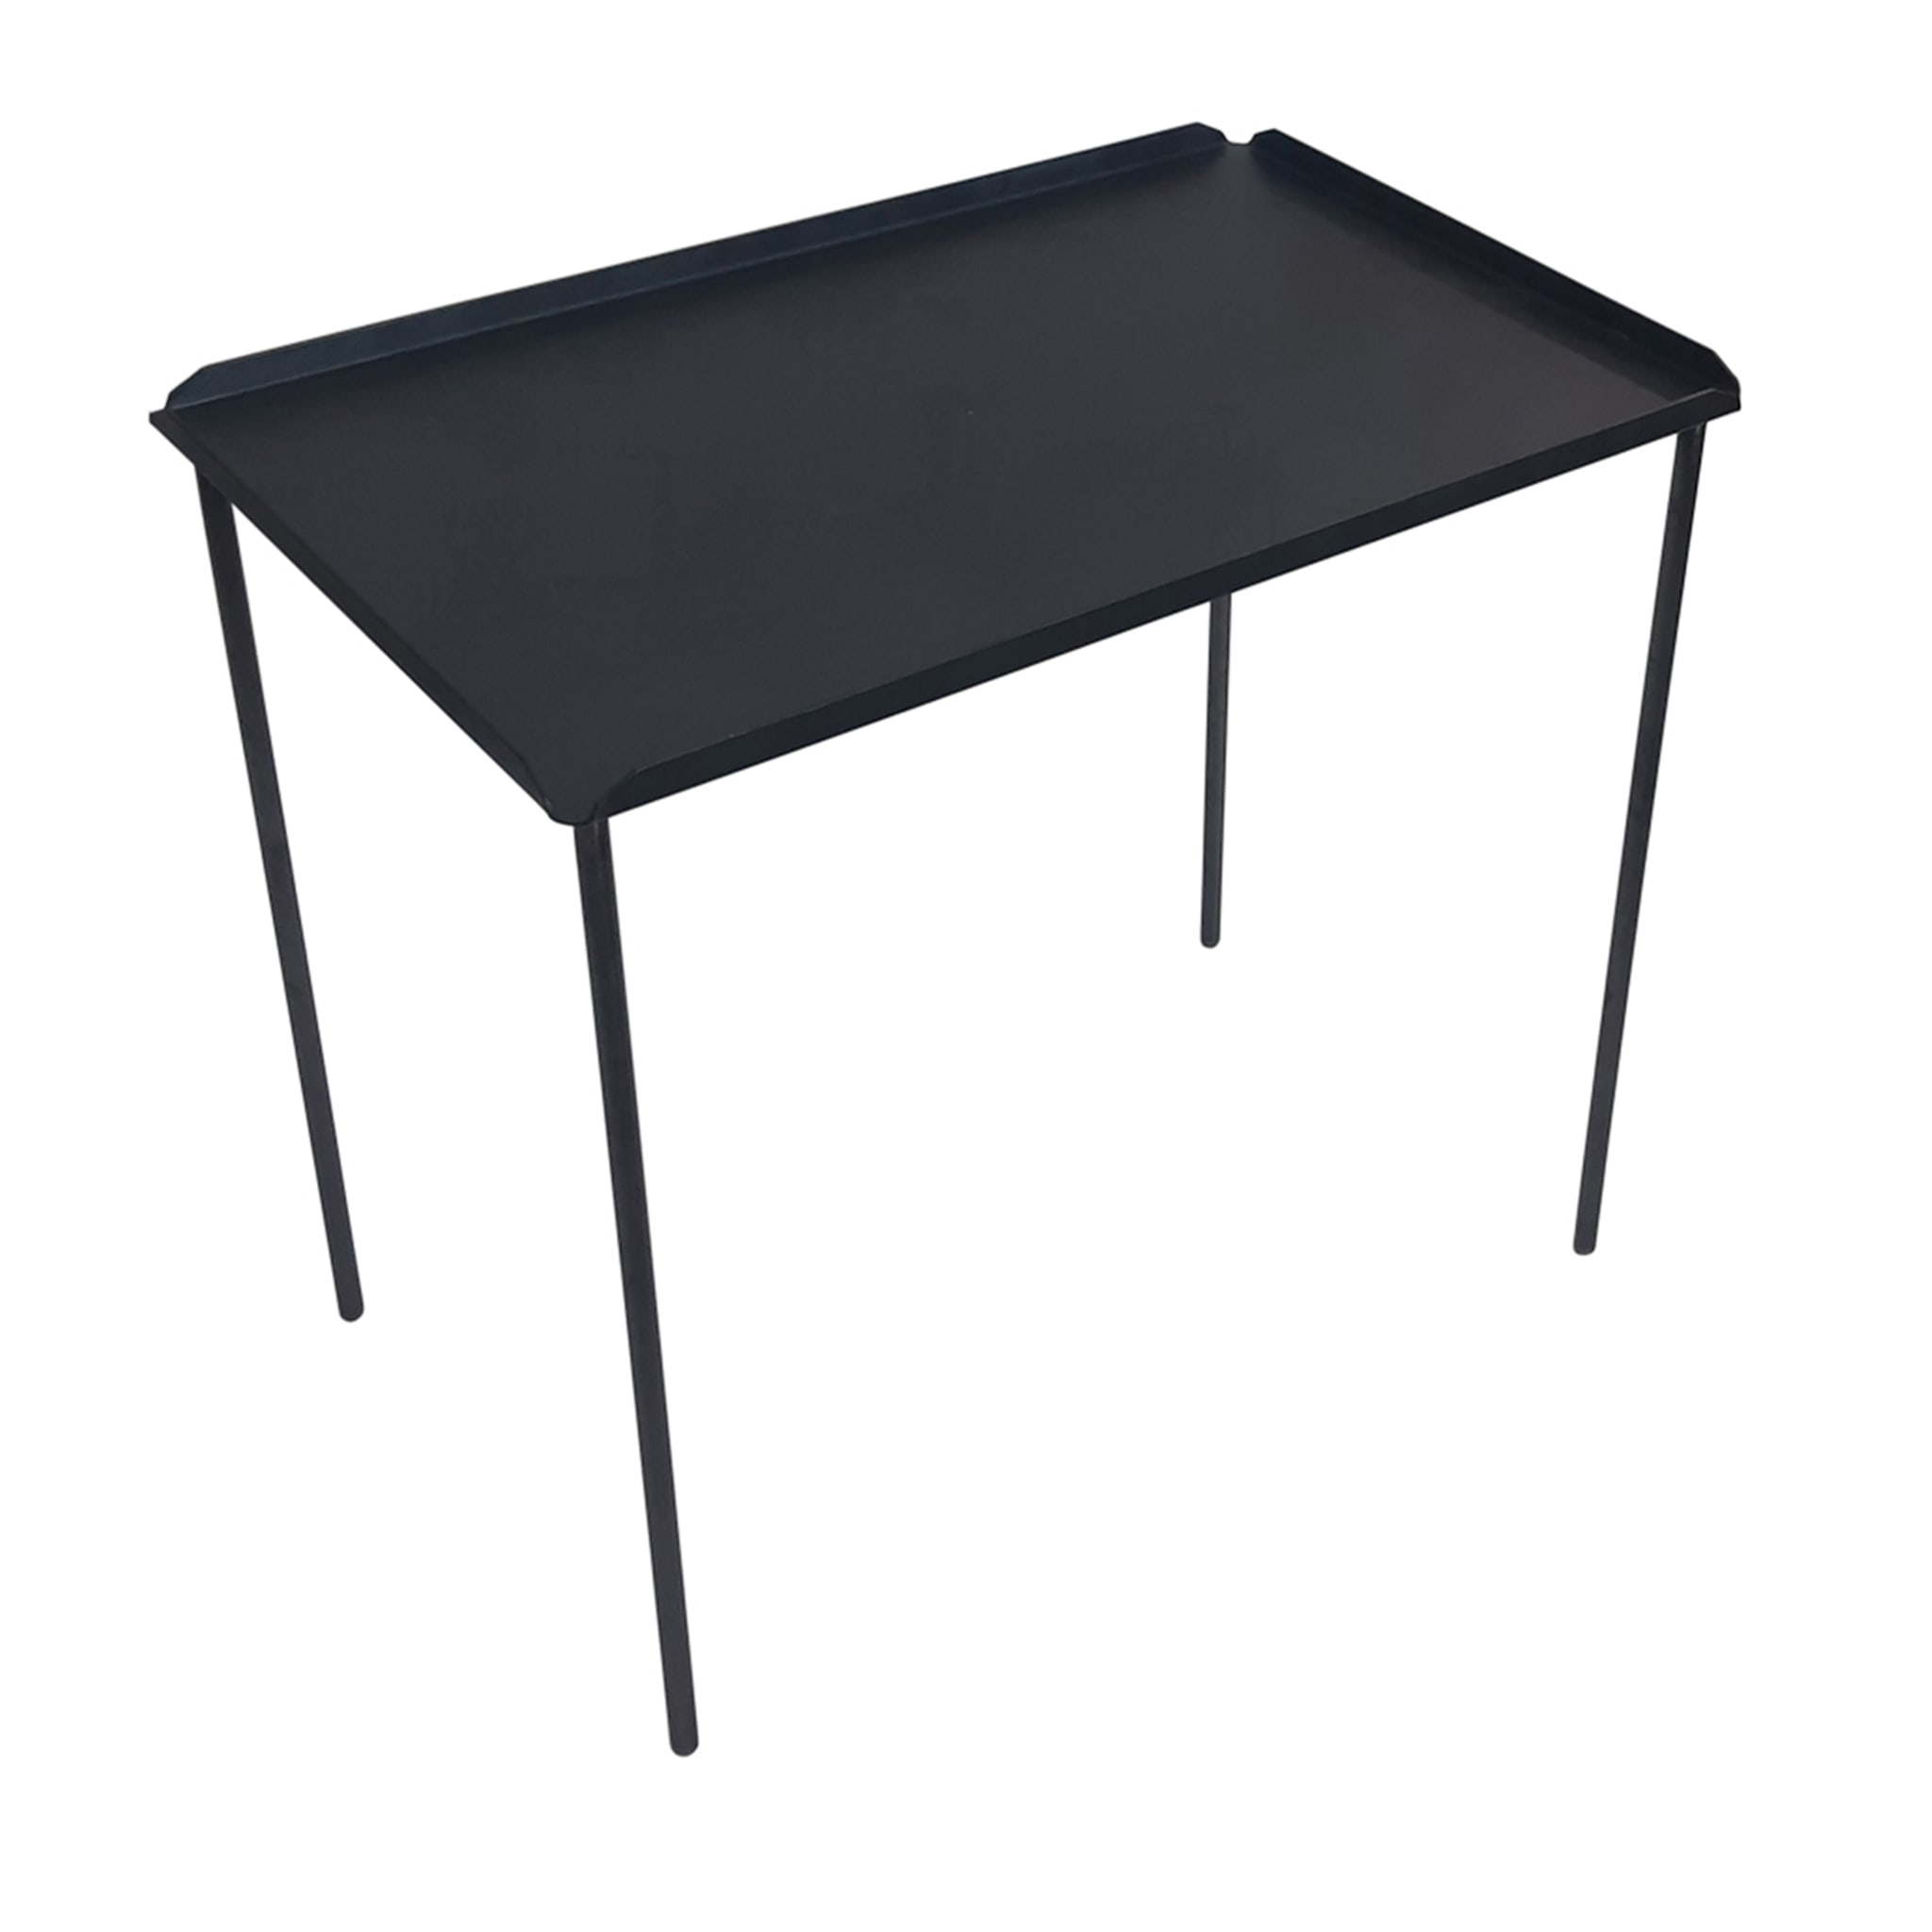 Table basse noire Minipolis - Vue principale